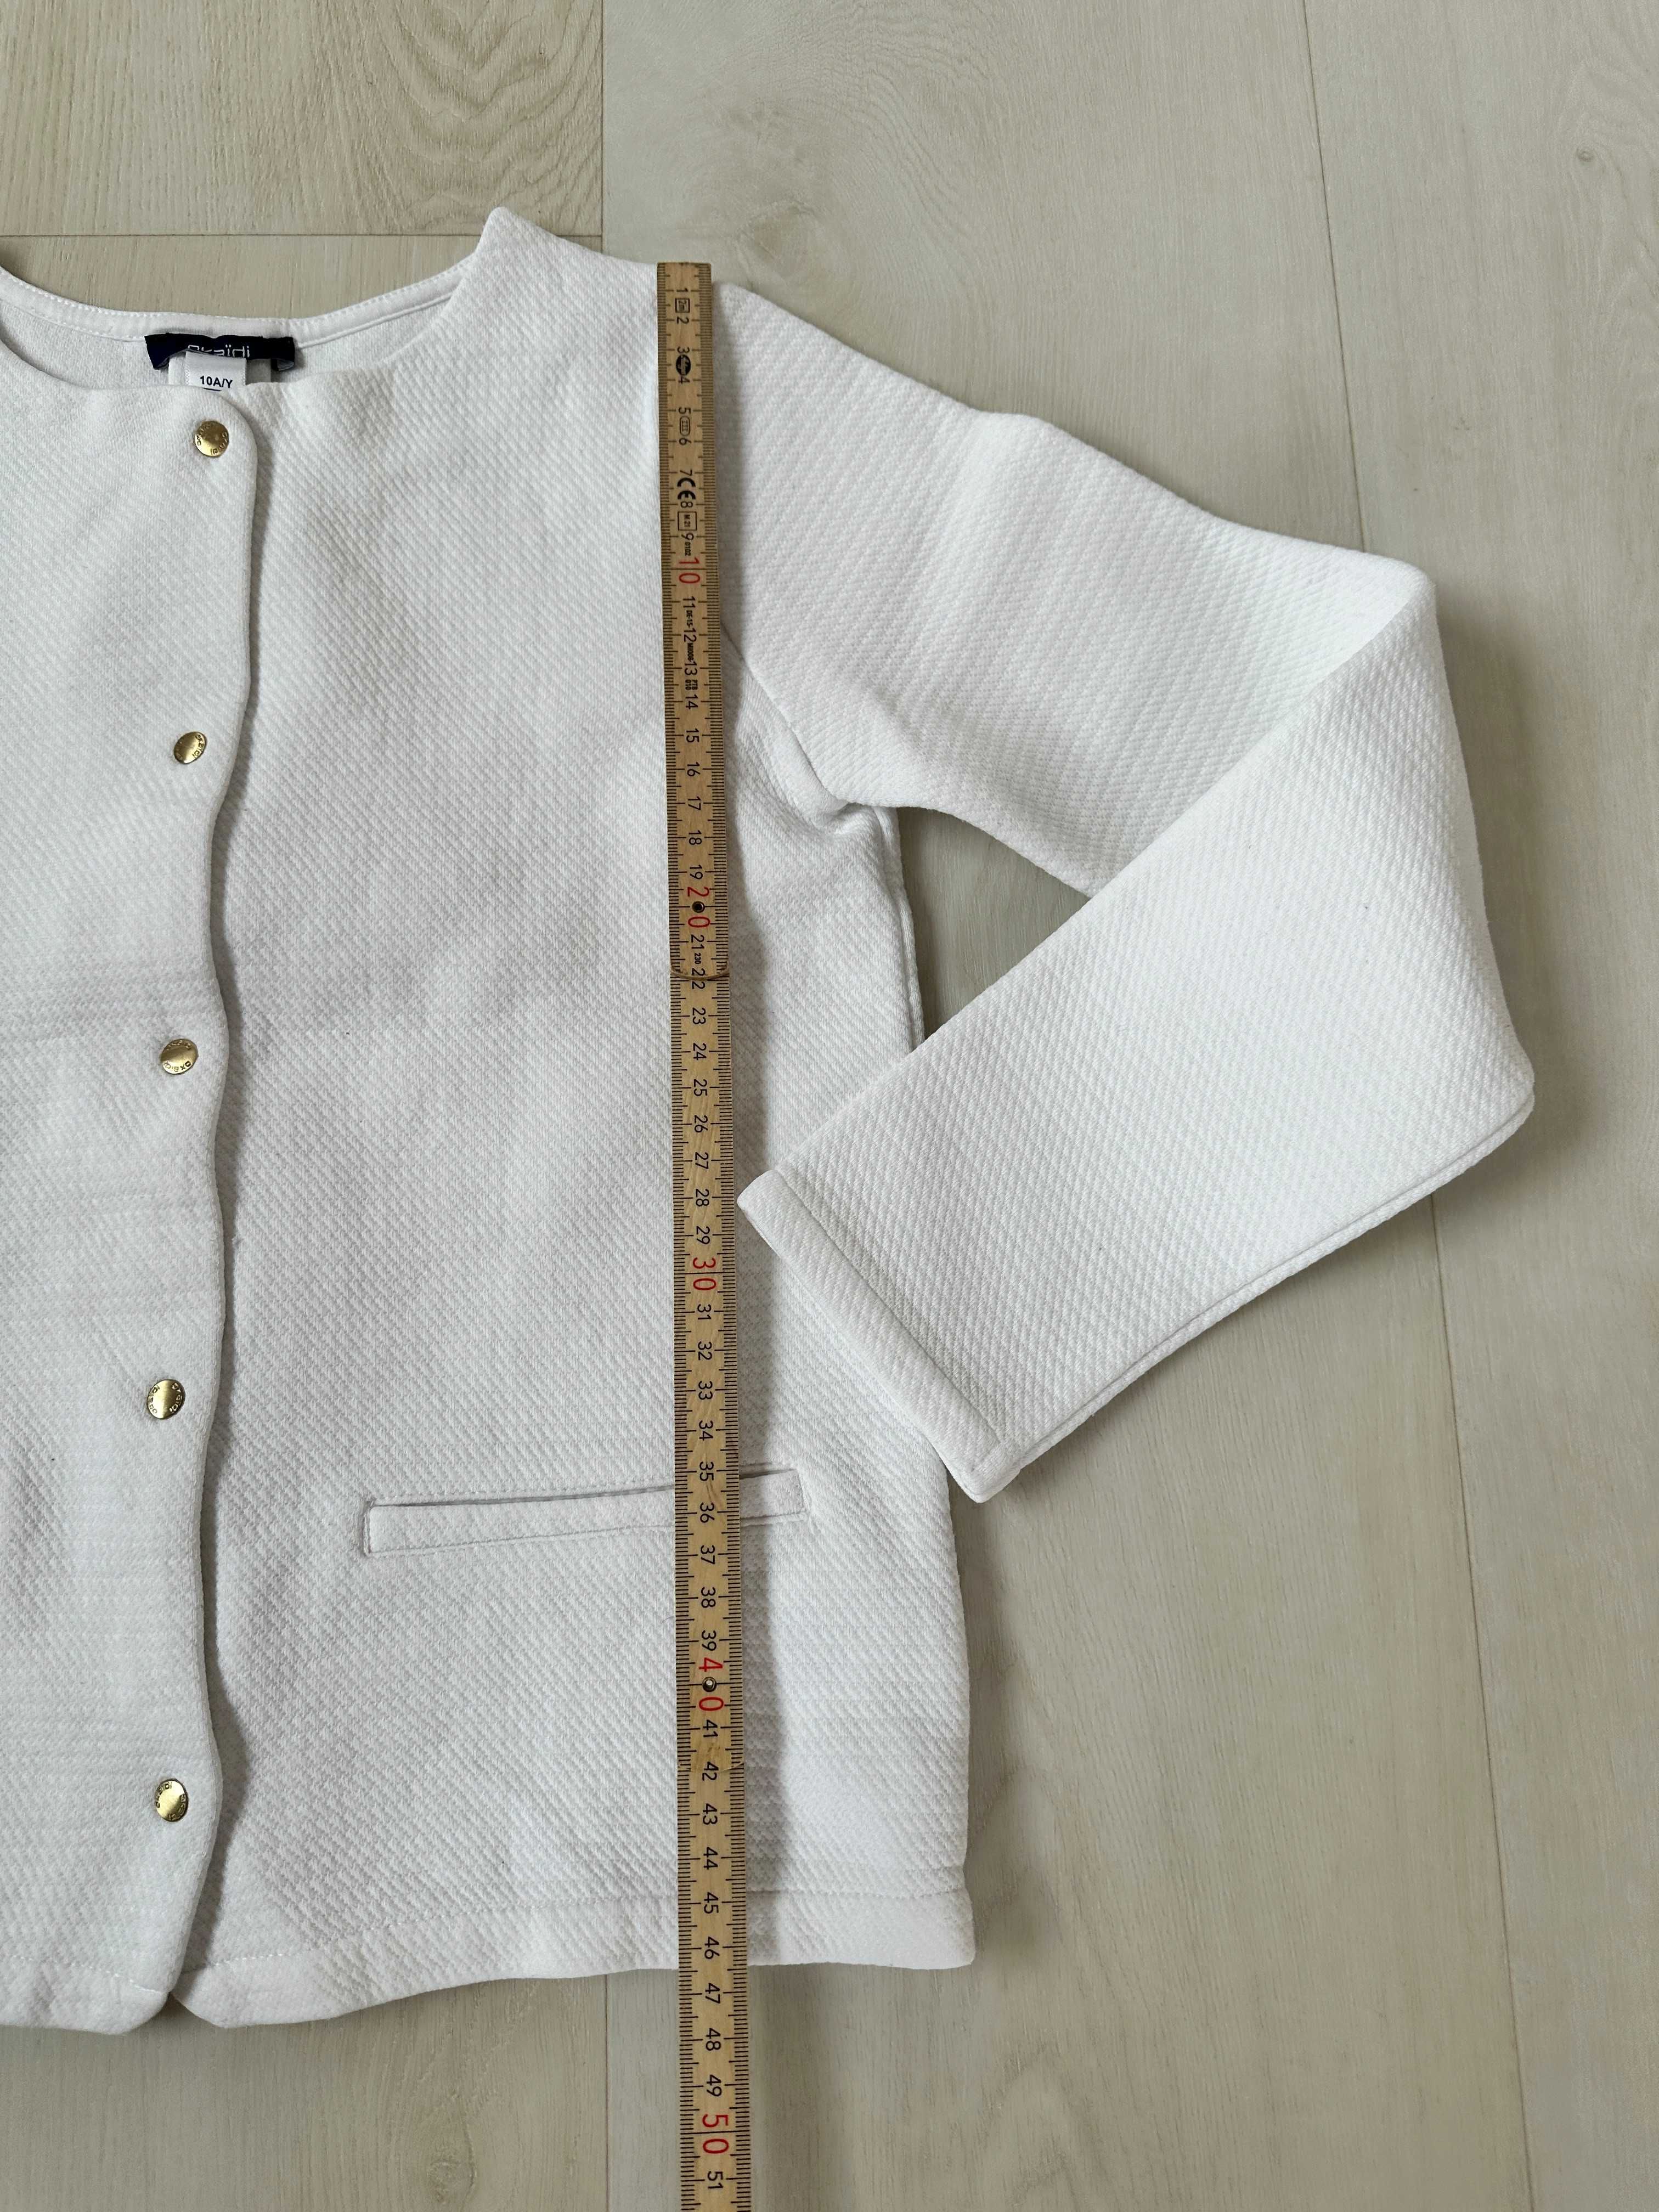 biały żakiecik bluza OKAIDI 10 lat 140 stan idealny